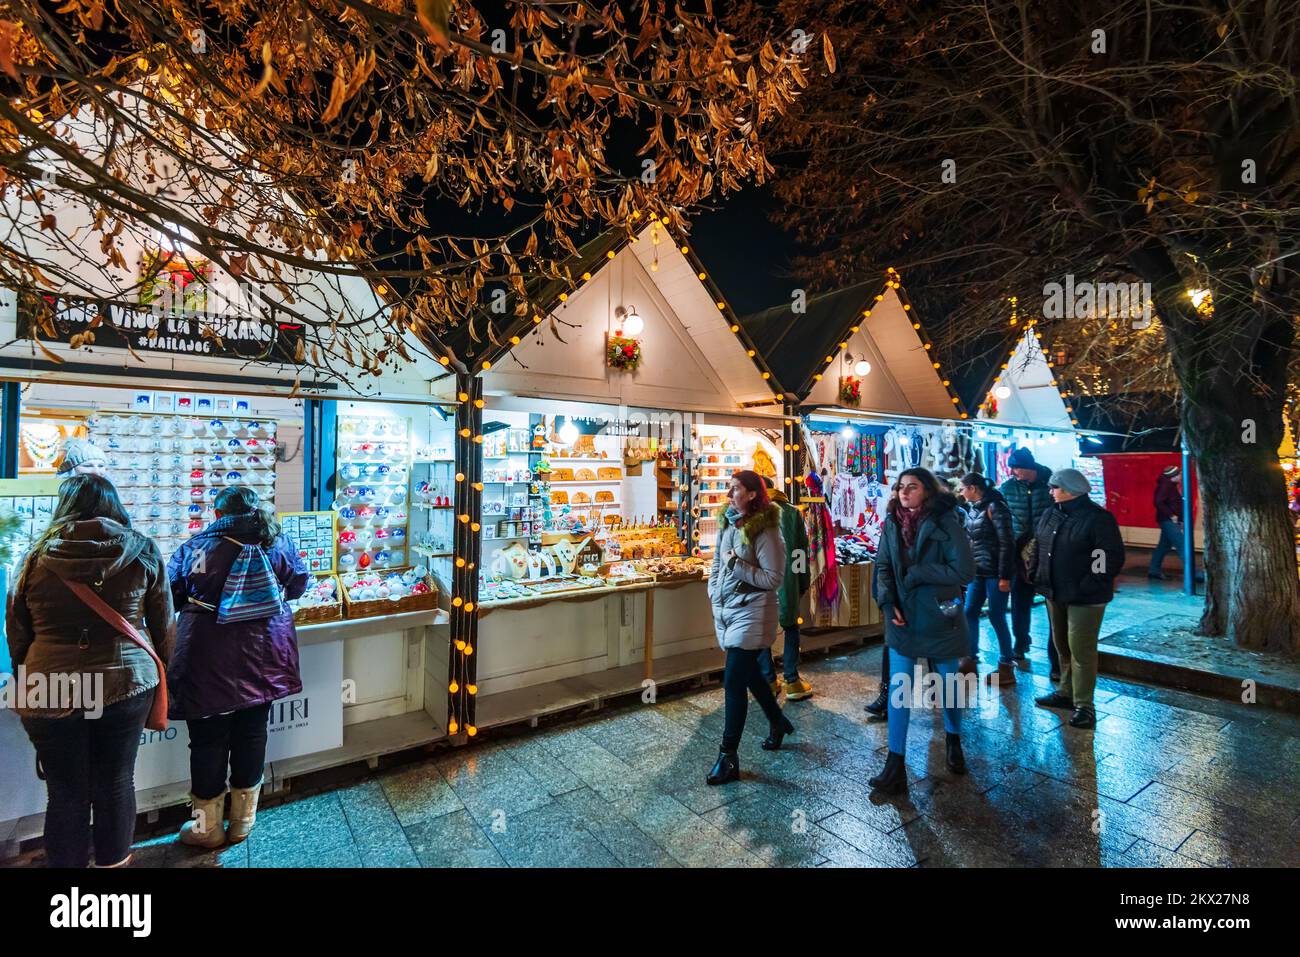 Cluj Napoca, Rumänien: 2019. Dezember - Nachtszene mit Weihnachtsmarkt in Siebenbürgen, Osteuropa Winterurlaub Szene. Stockfoto